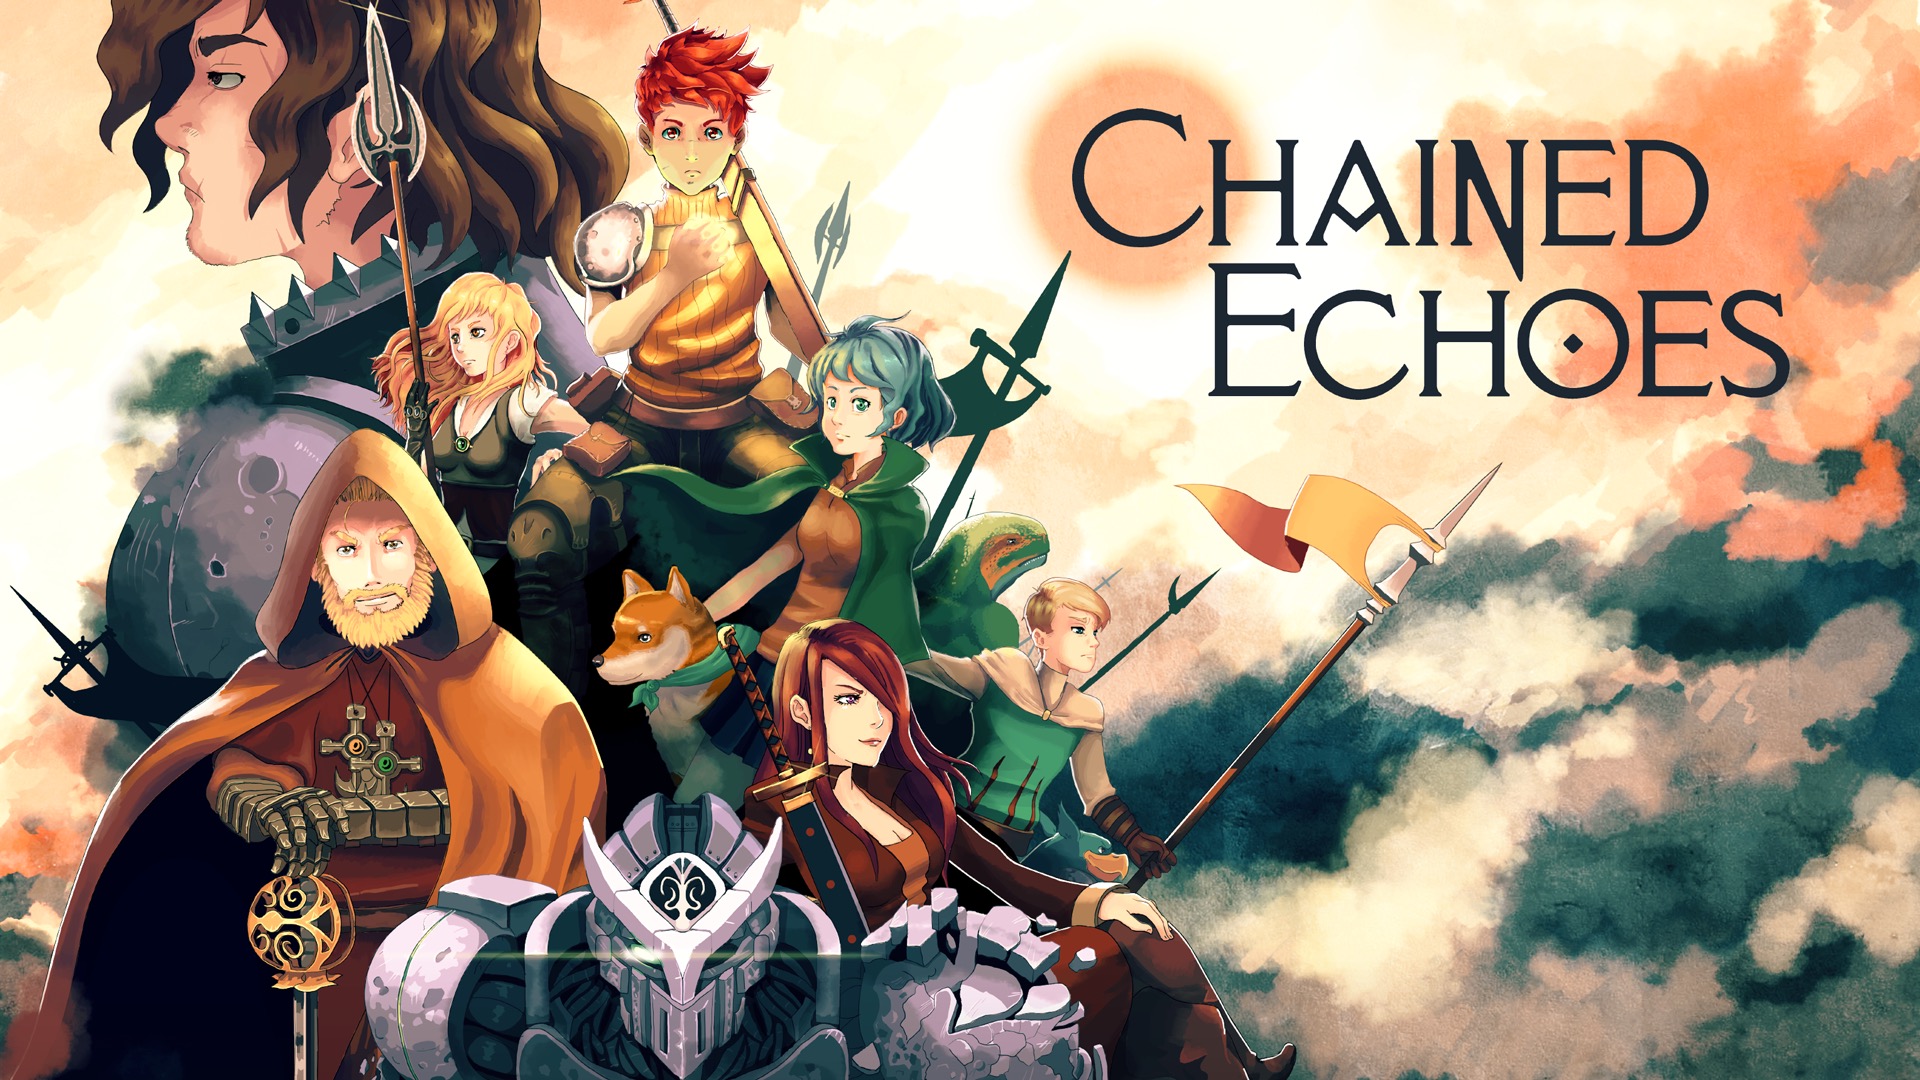 Новинка Game Pass игра Chained Echoes получает очень высокие оценки критиков